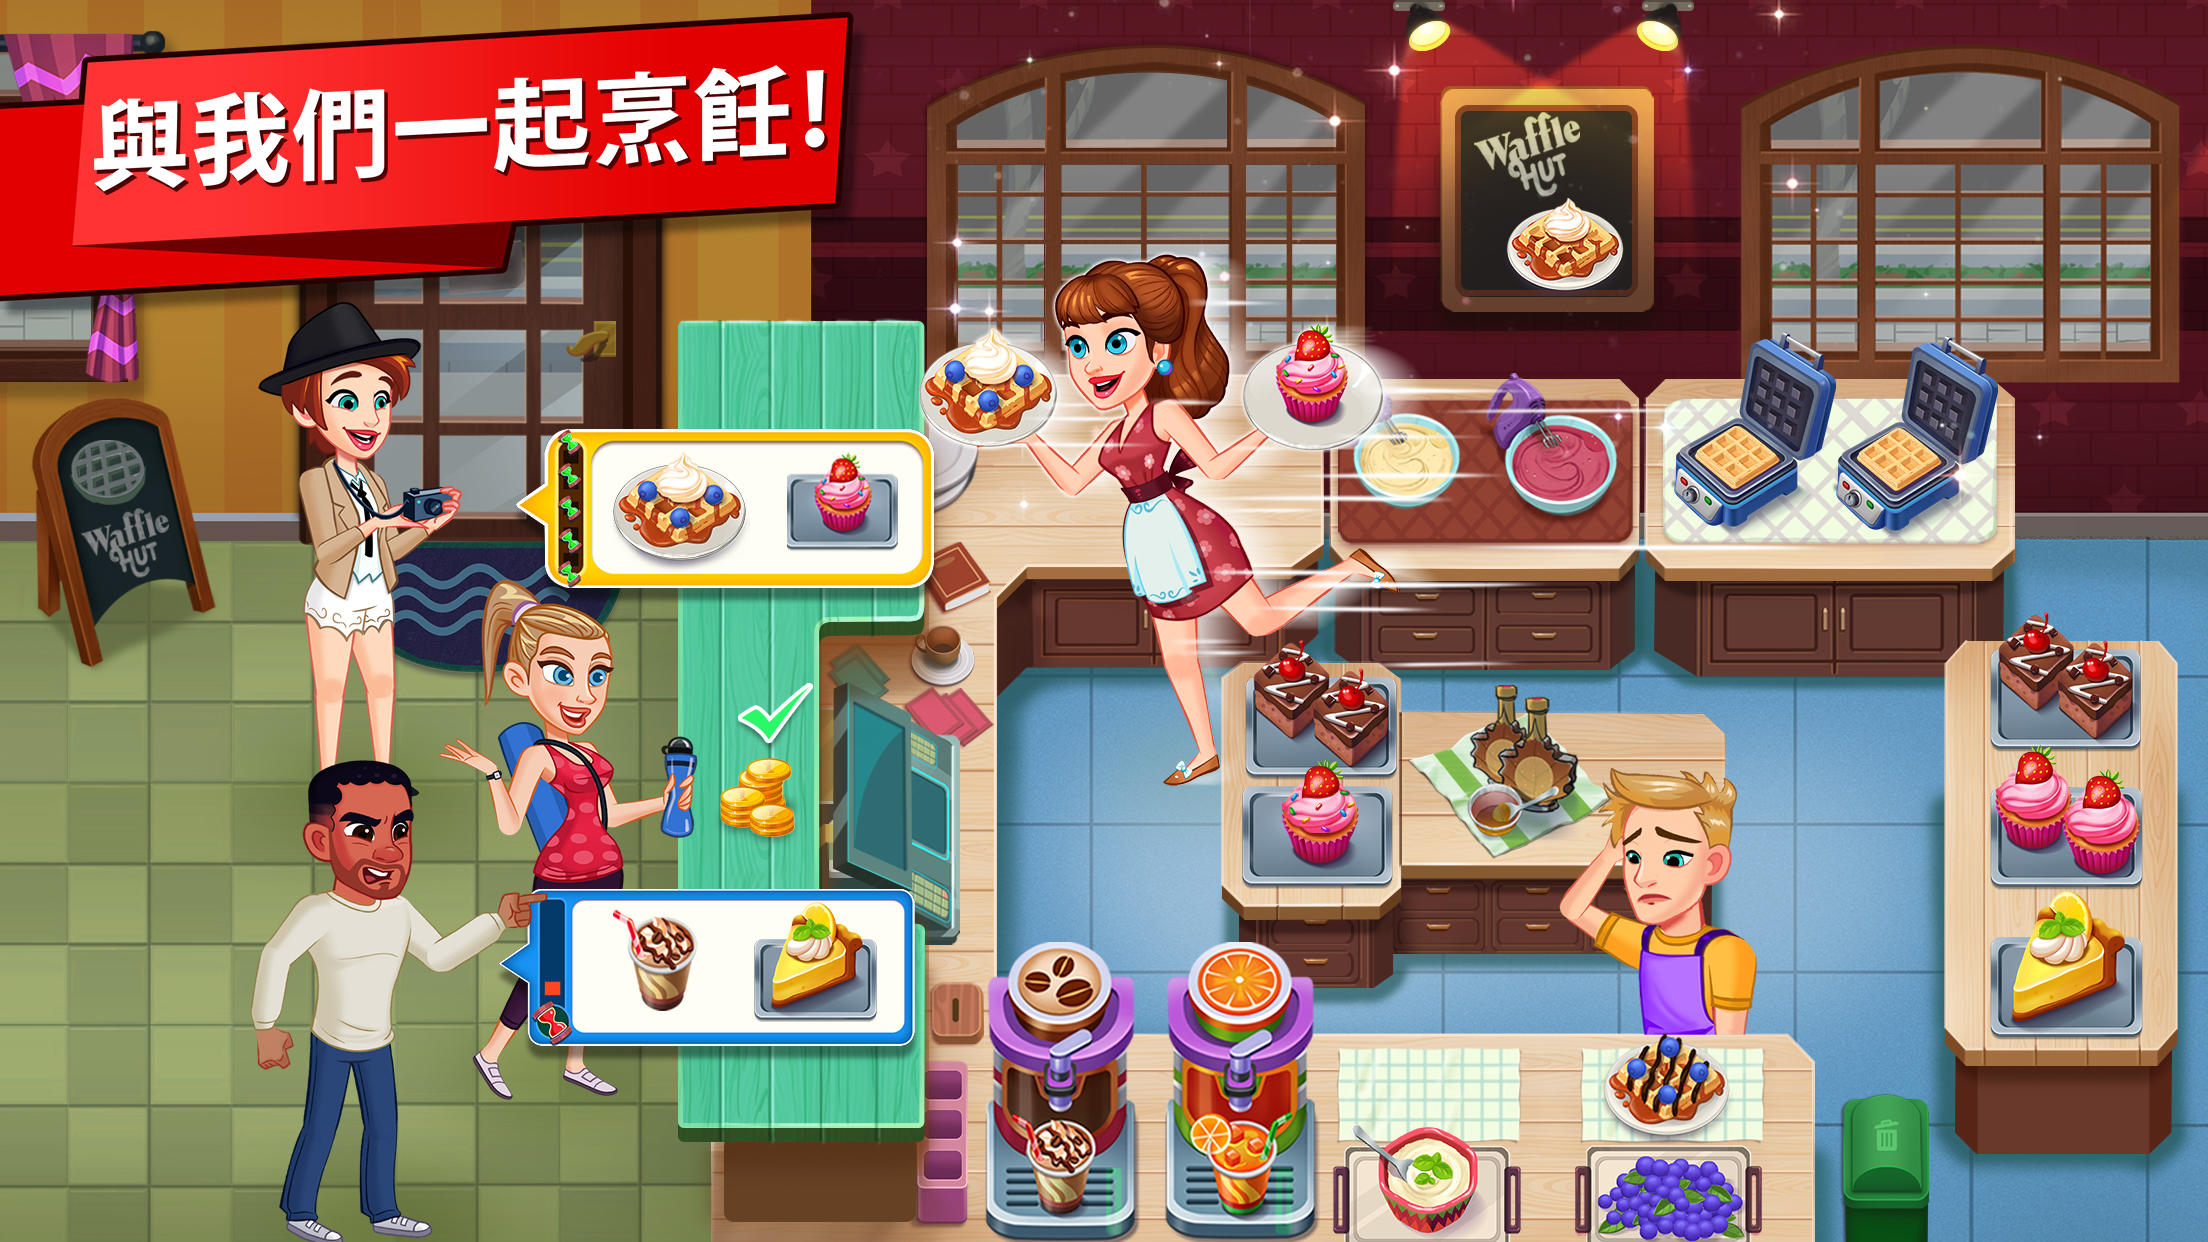 Screenshot 1 of Cooking: My Story - 免費的烹飪遊戲和美食遊戲 1.13.2